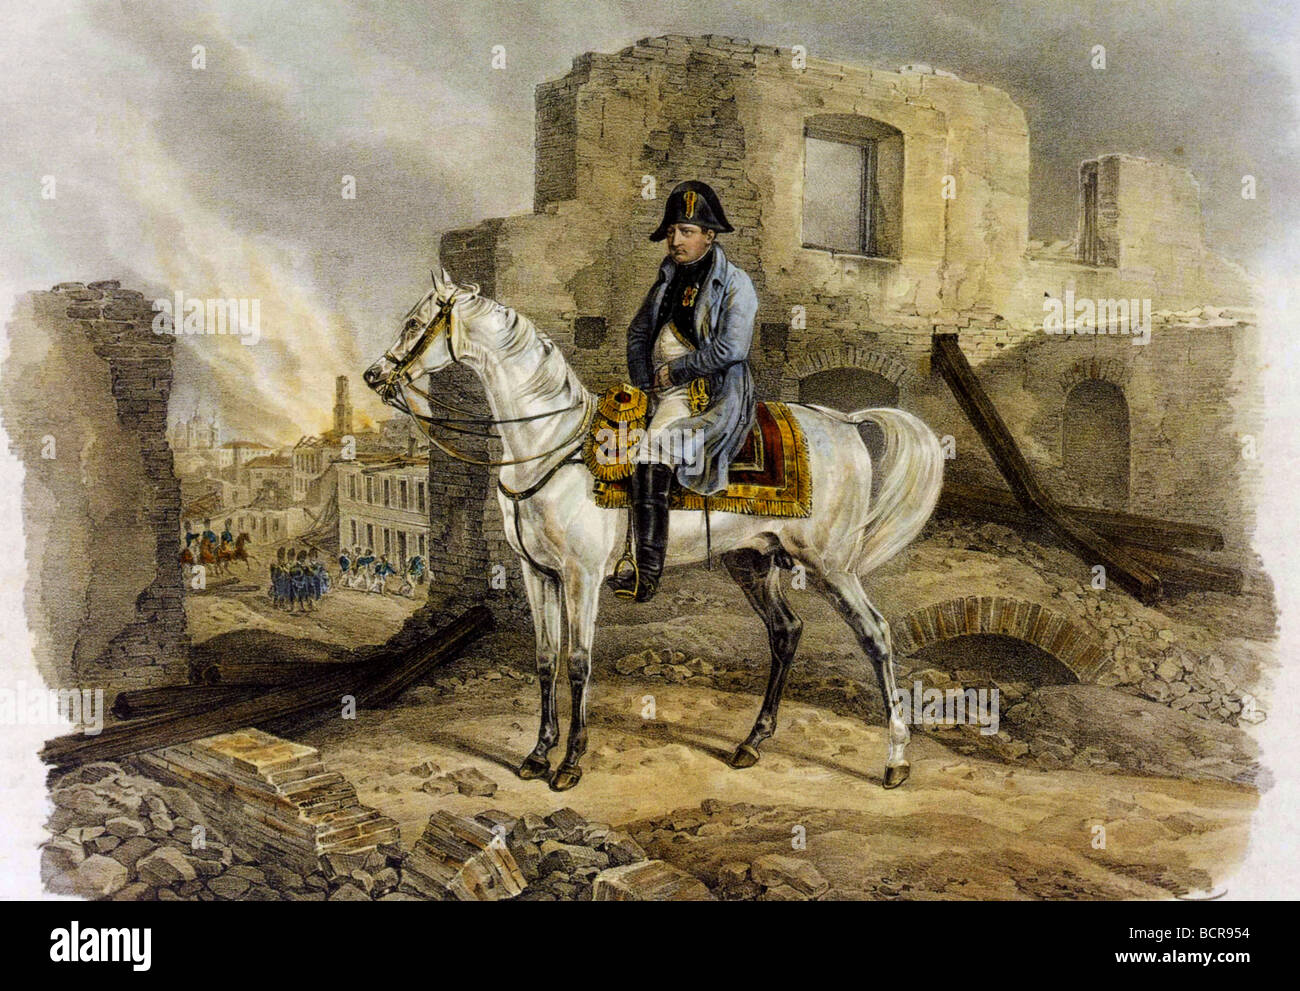 NAPOLEON in den Ruinen von Moskau 22. September 1812 gezeichnet von Albrecht Adam, begleitet von der französischen Armee - siehe Beschreibung unten Stockfoto